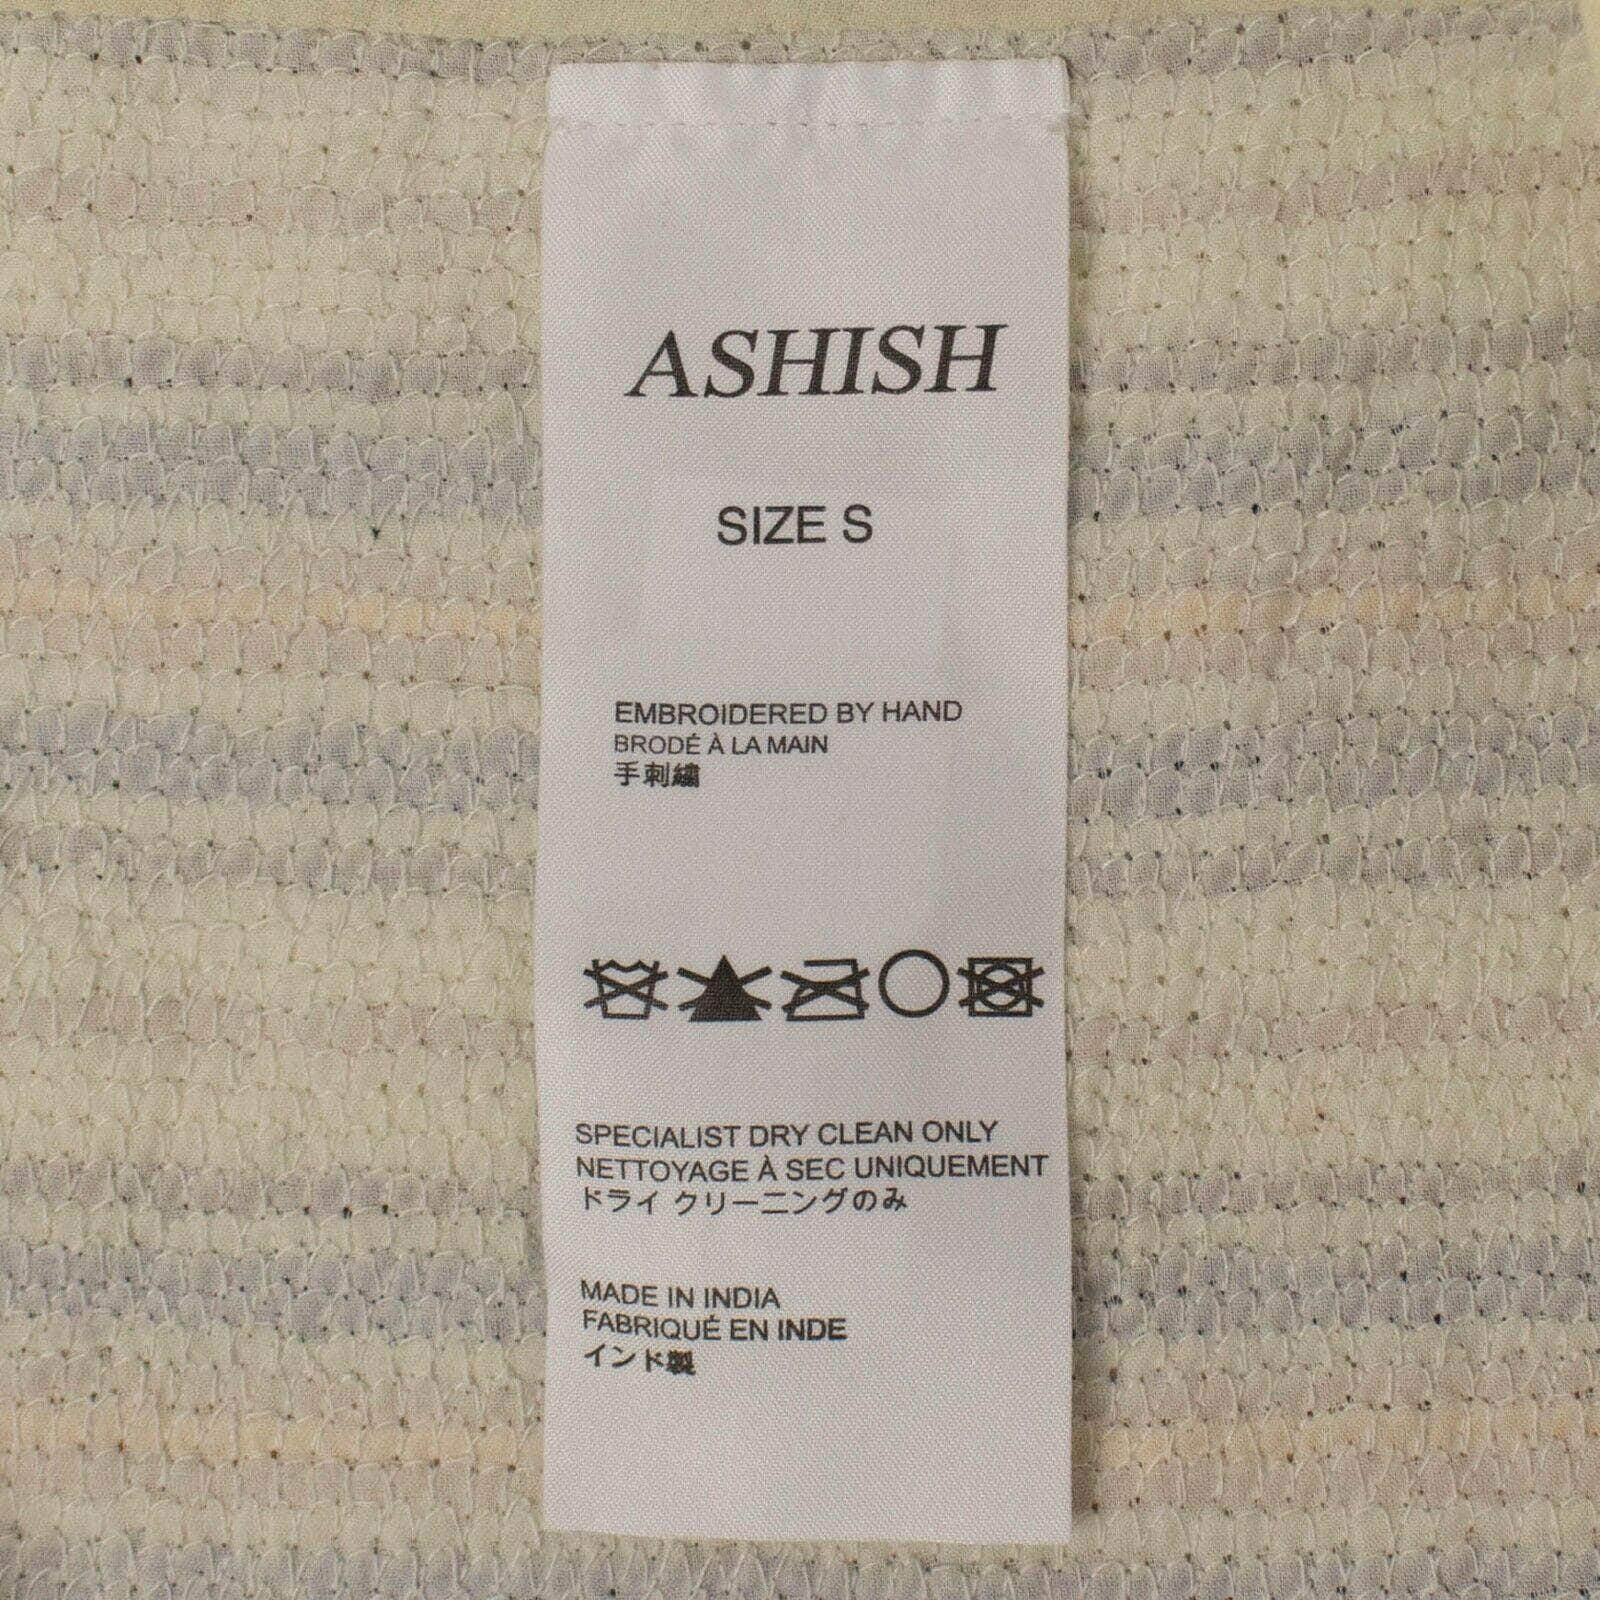 Ashish Women's Dresses S Sequin Striped Mini Slip Dress - Cream And Multicolored 69LE-1849/S 69LE-1849/S